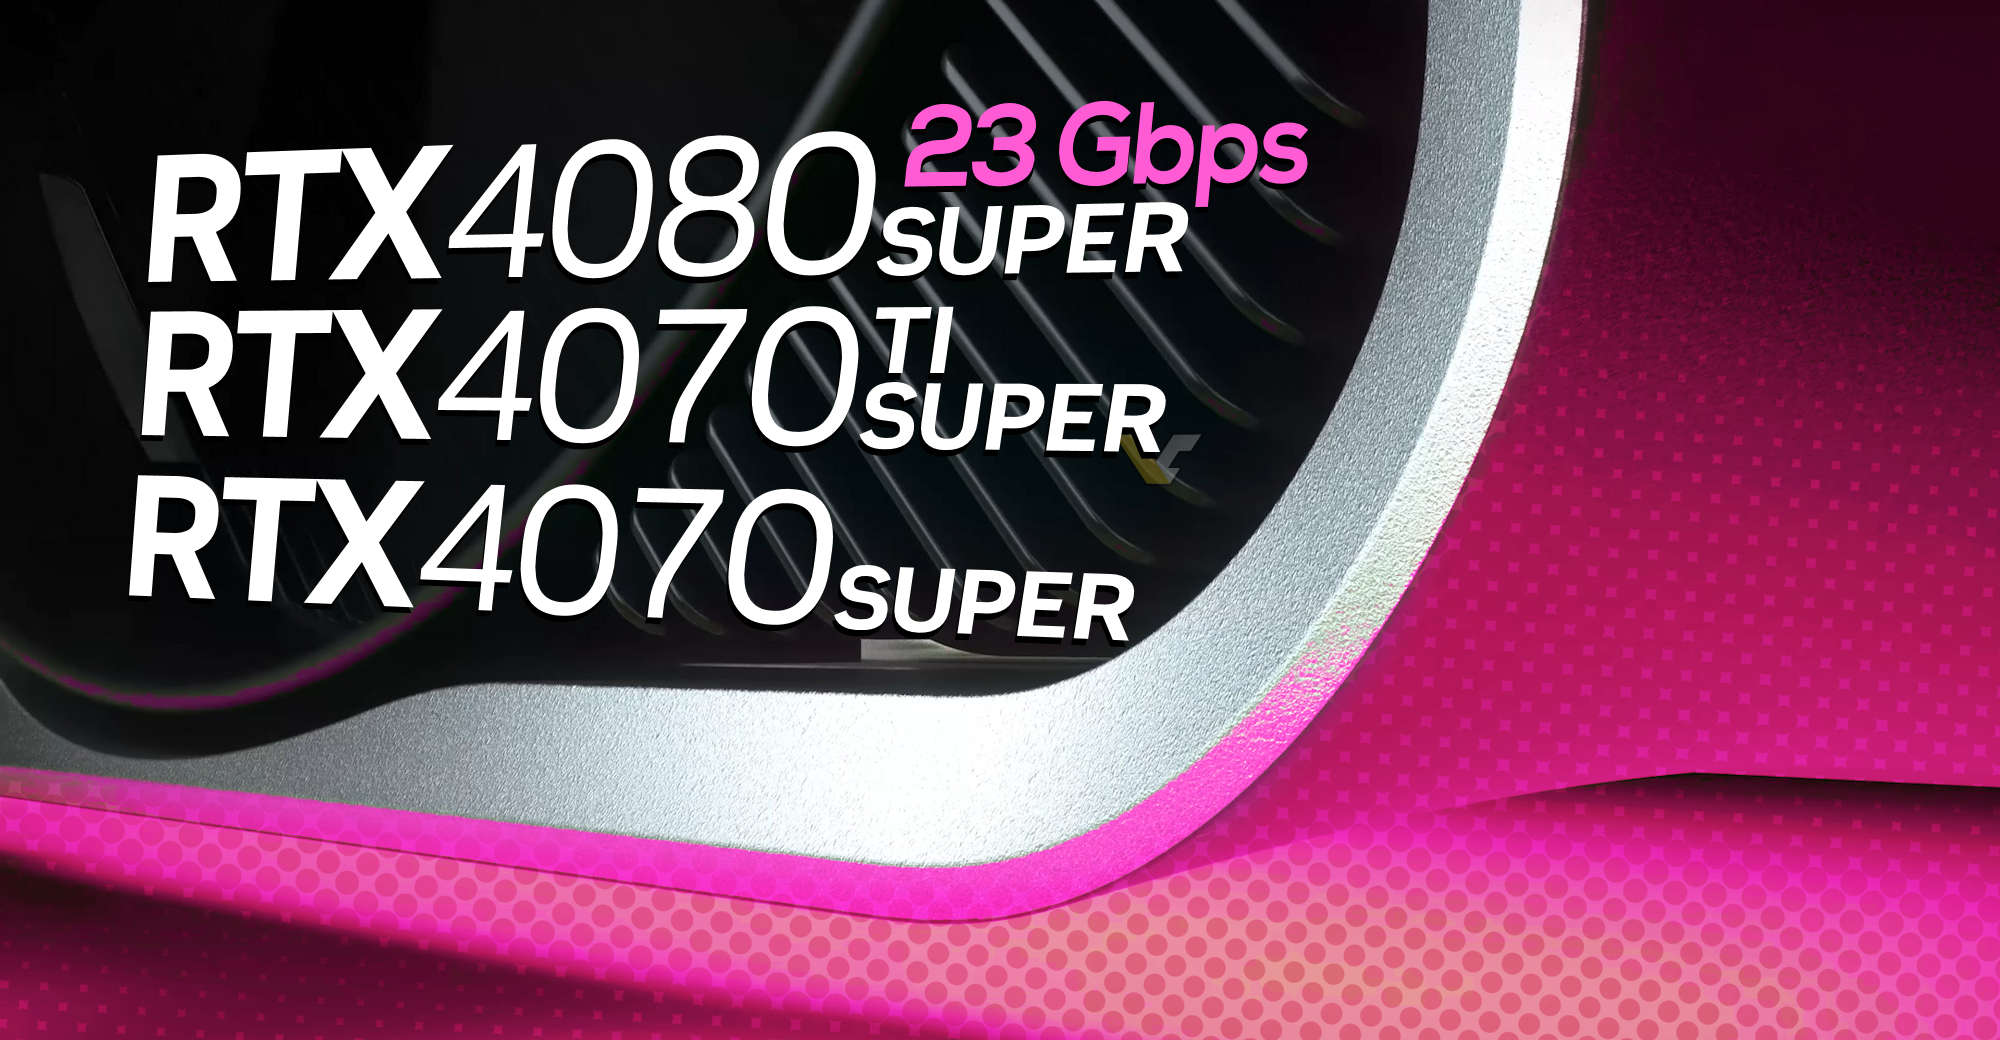 Karta NVIDIA GeForce RTX 4080 SUPER bude mít 23 Gbps GDDR6X paměti, unikly plné specifikace RTX 40 SUPER